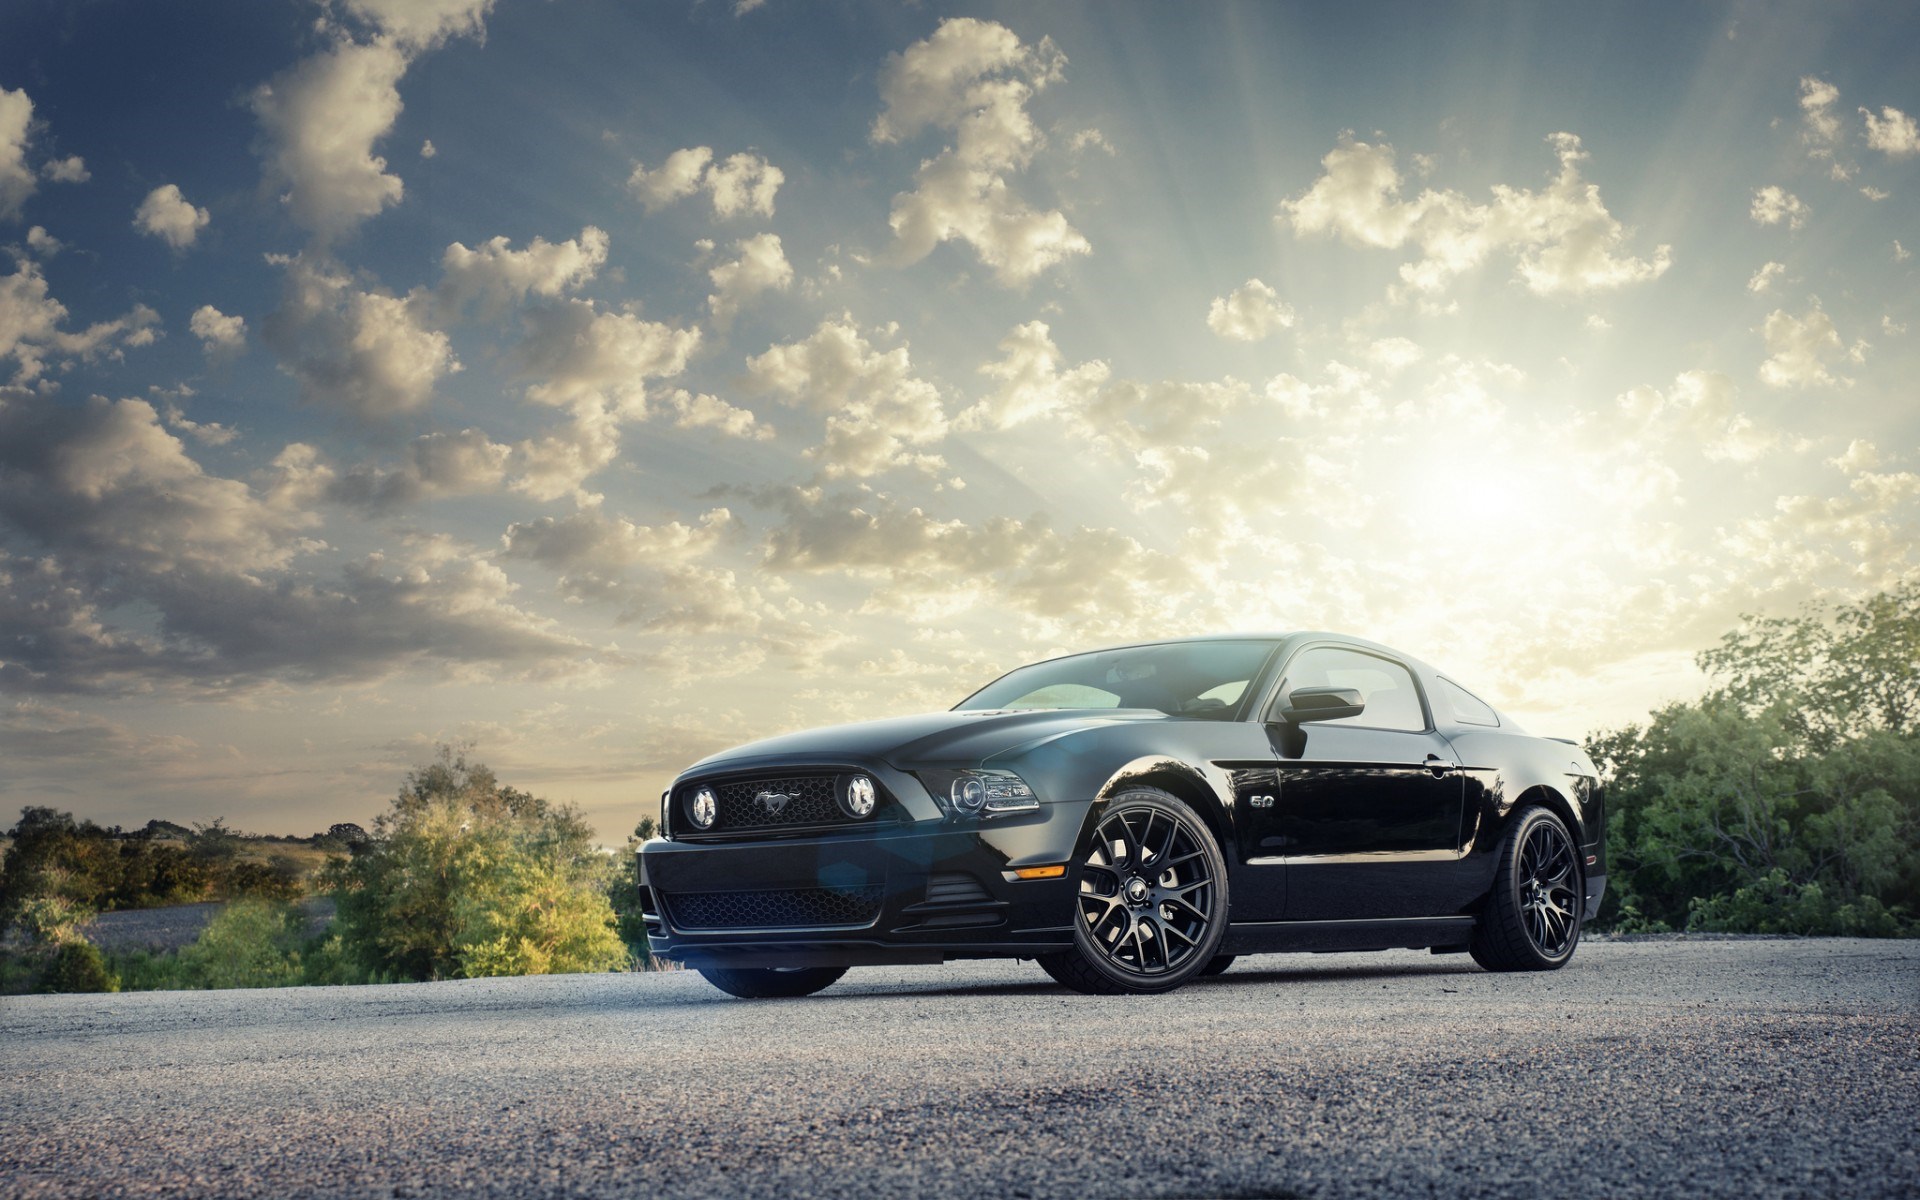 Xem hình Ford Mustang, một trong những chiếc xe thể thao mạnh mẽ và đẹp nhất thế giới. Chiêm ngưỡng thiết kế tinh tế và đường nét thể thao, hứa hẹn mang lại cho bạn một trải nghiệm đầy sức mạnh và chất lượng.